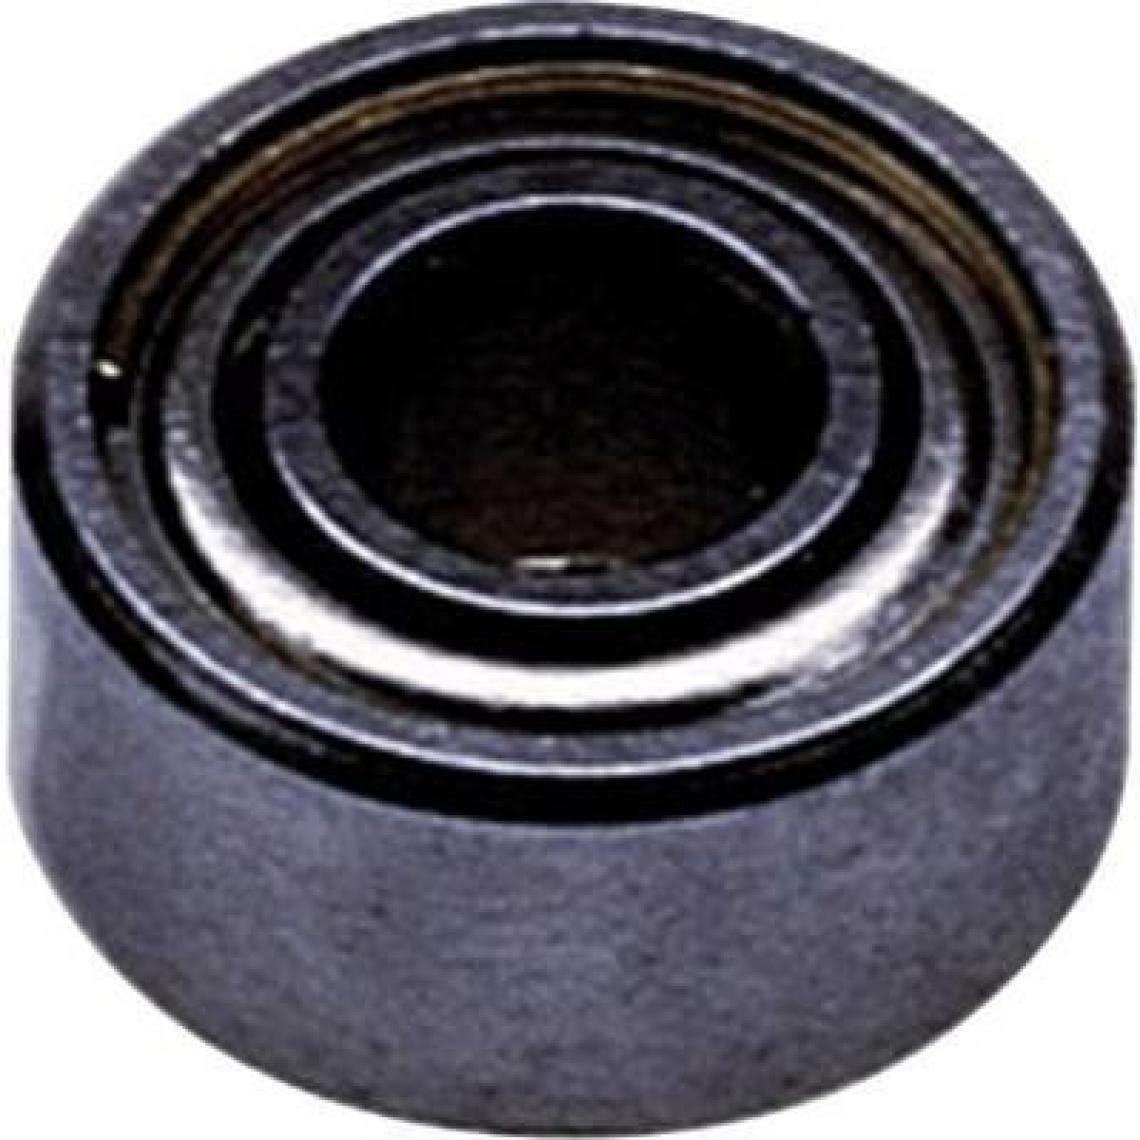 Inconnu - Reely Roulement Radial en acier inoxydable Diamètre intérieurâ€¯: 10 mm – Diamètre extérieurâ€¯: 15 mm Vitesse (Max.)â€¯: 43000 tr/min - Accessoires et pièces